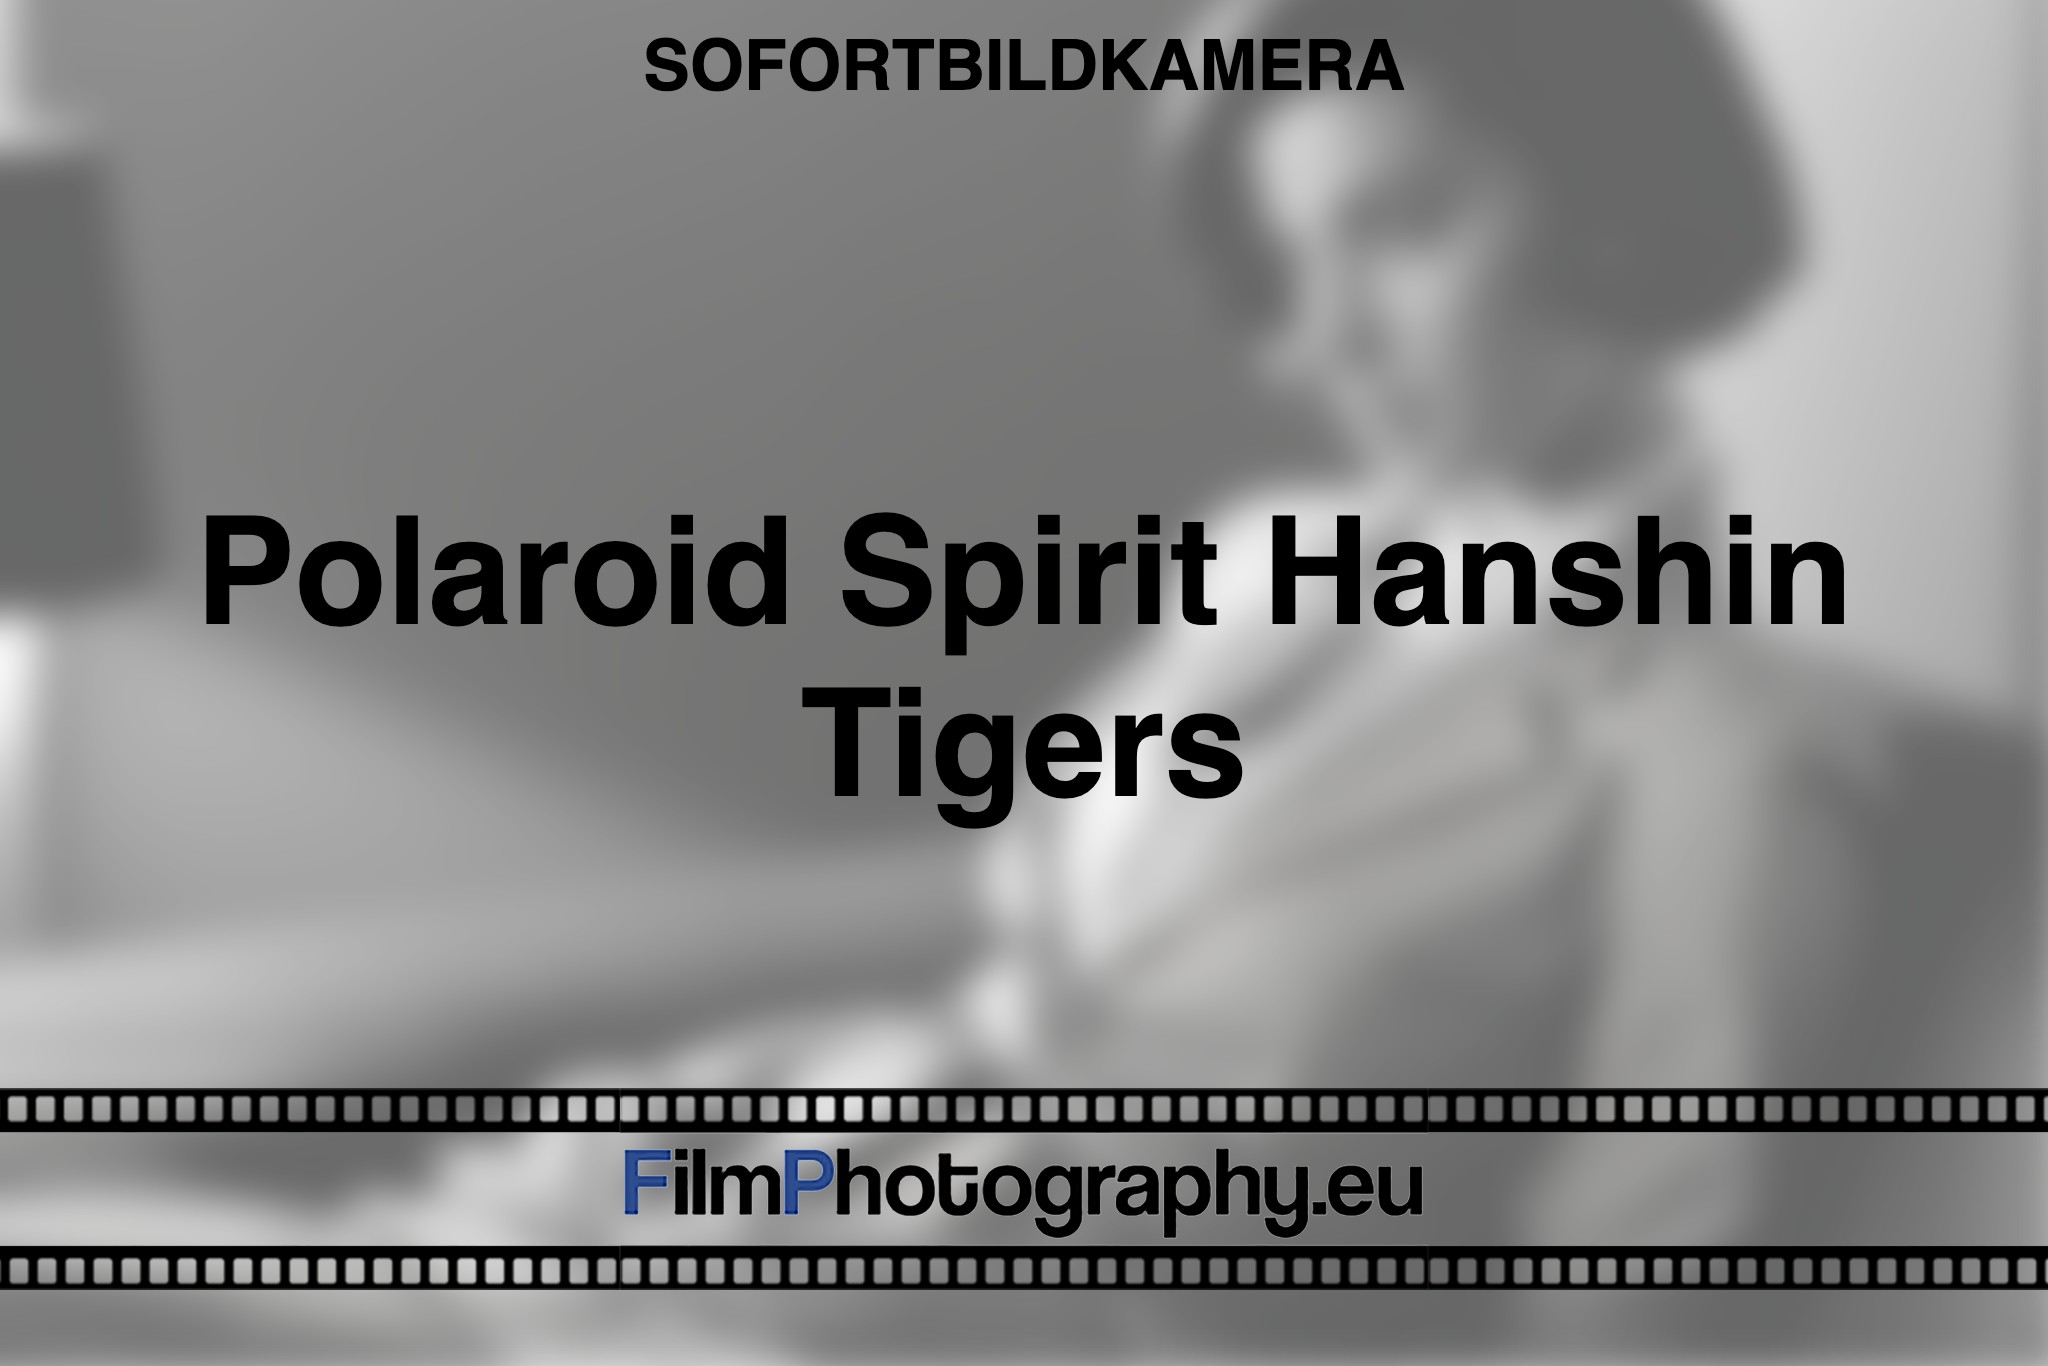 polaroid-spirit-hanshin-tigers-sofortbildkamera-bnv